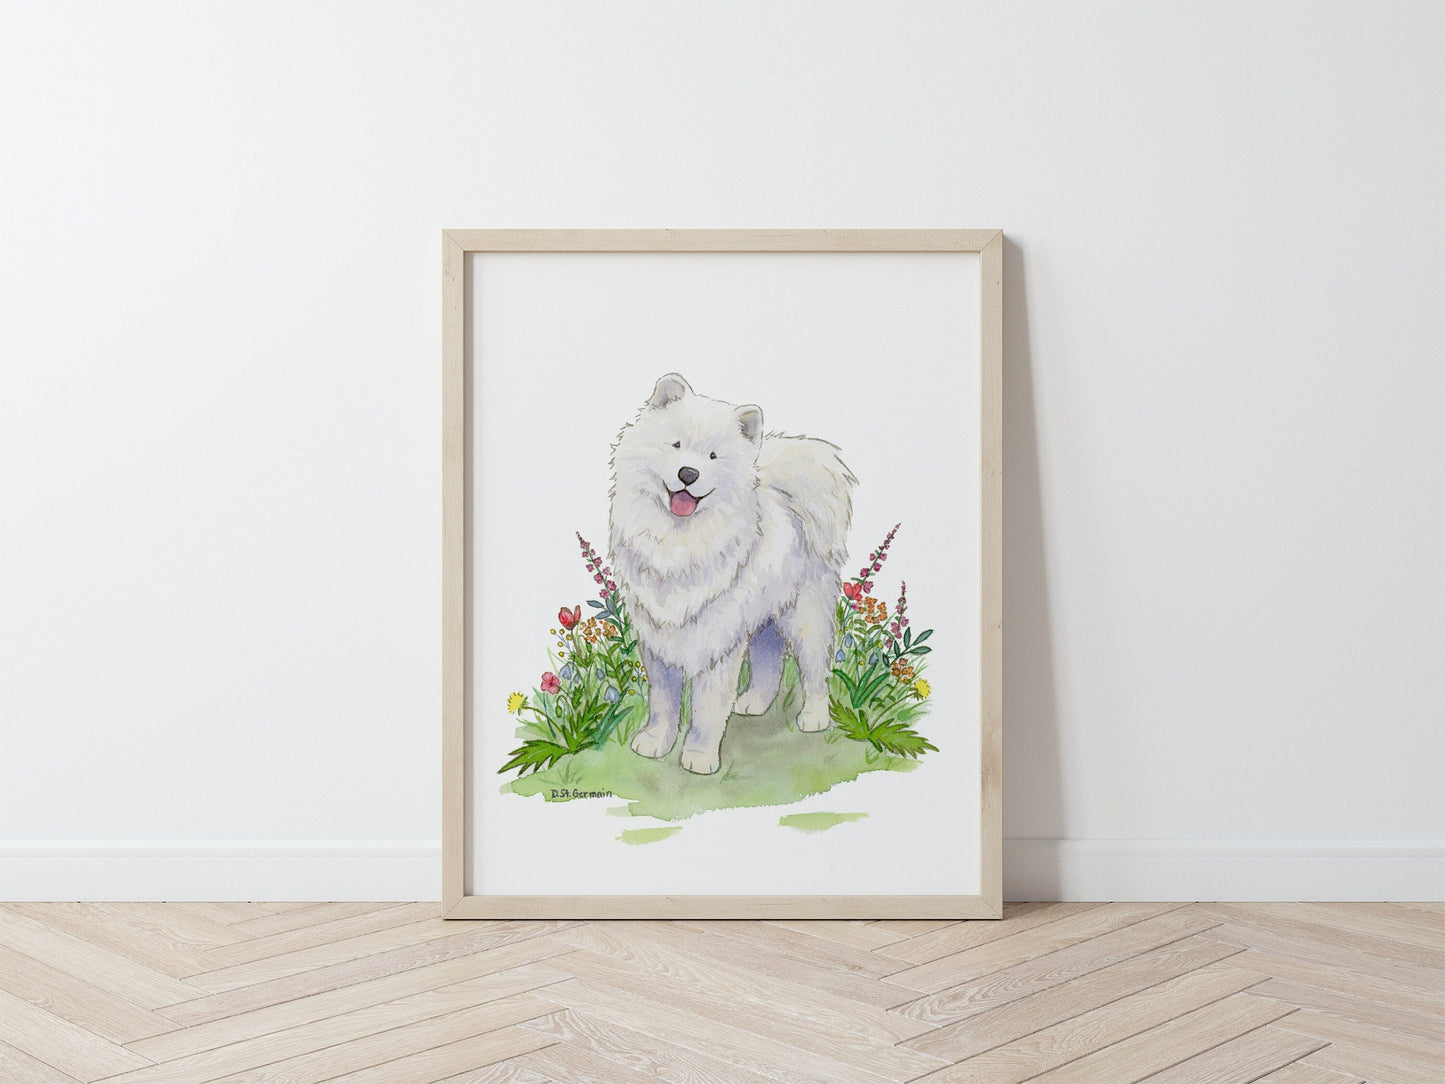 Samoyed Art, Watercolor Samoyed, Samoyed Gift, Dog Art, Dog Lover Gift, Dog Nursery Print, Husky Gift, Children's Wall Art, Nursery Decor